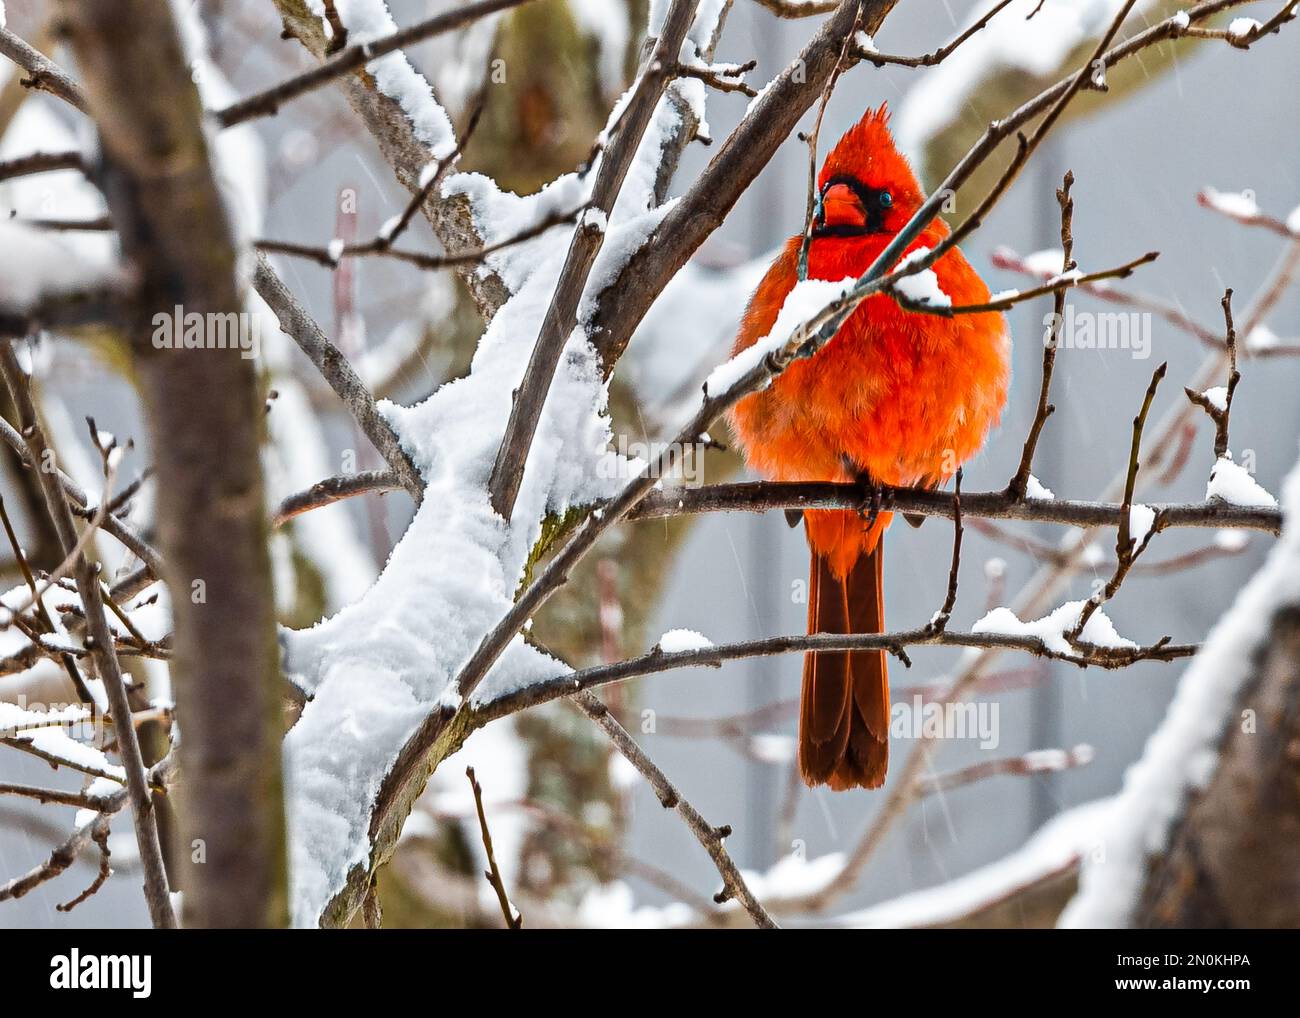 Cardinal du Nord (cardinalis cardinalis) mâle à longue queue, avec bec court et très épais. L'un des oiseaux nord-américains dans les paysages d'hiver. Banque D'Images